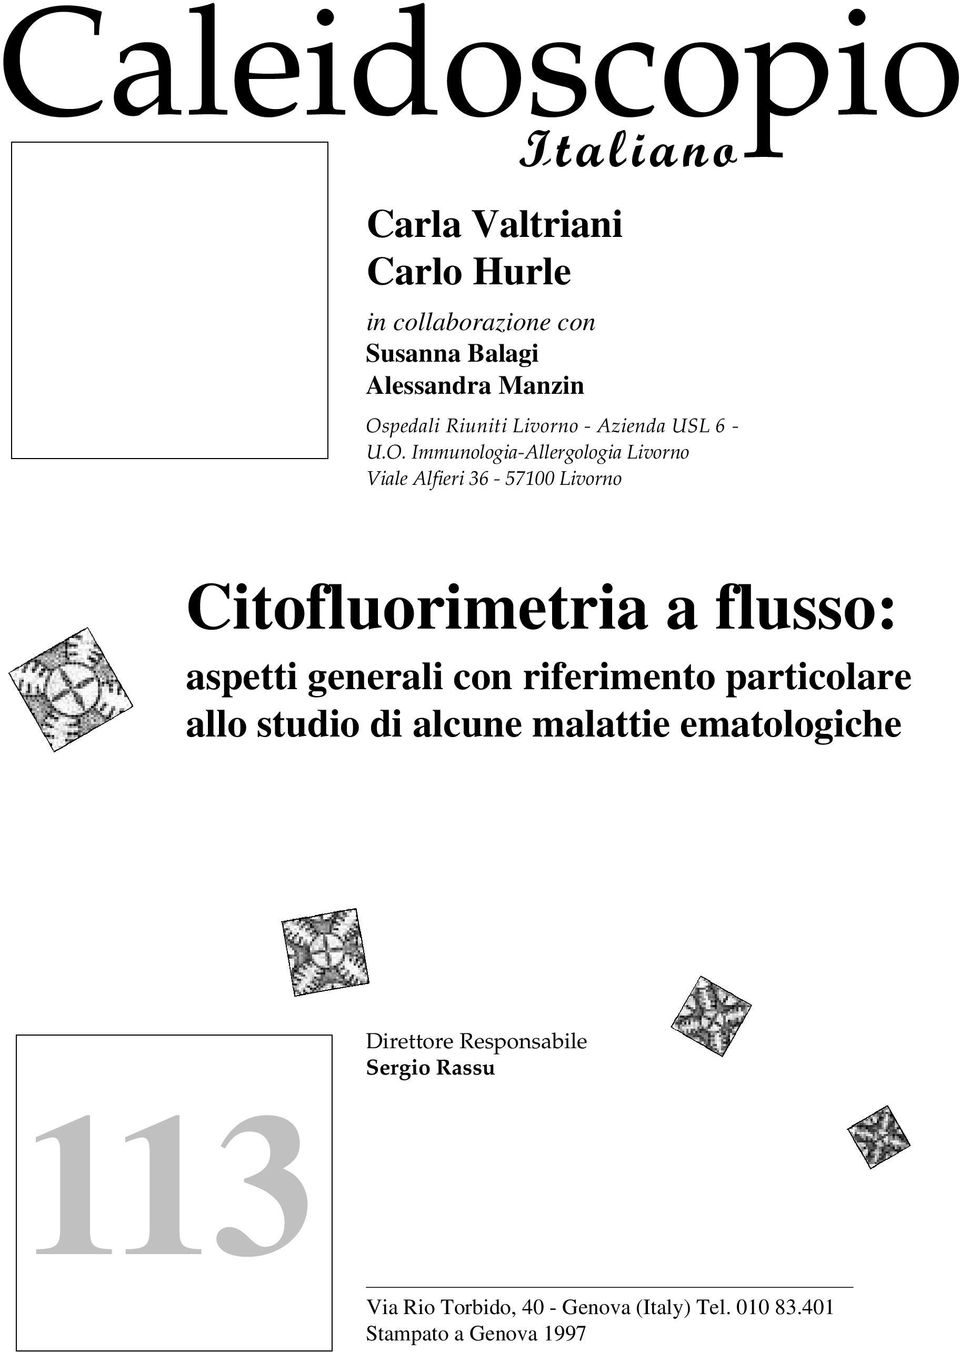 Immunologia-Allergologia Livorno Viale Alfieri 36-57100 Livorno Citofluorimetria a flusso: aspetti generali